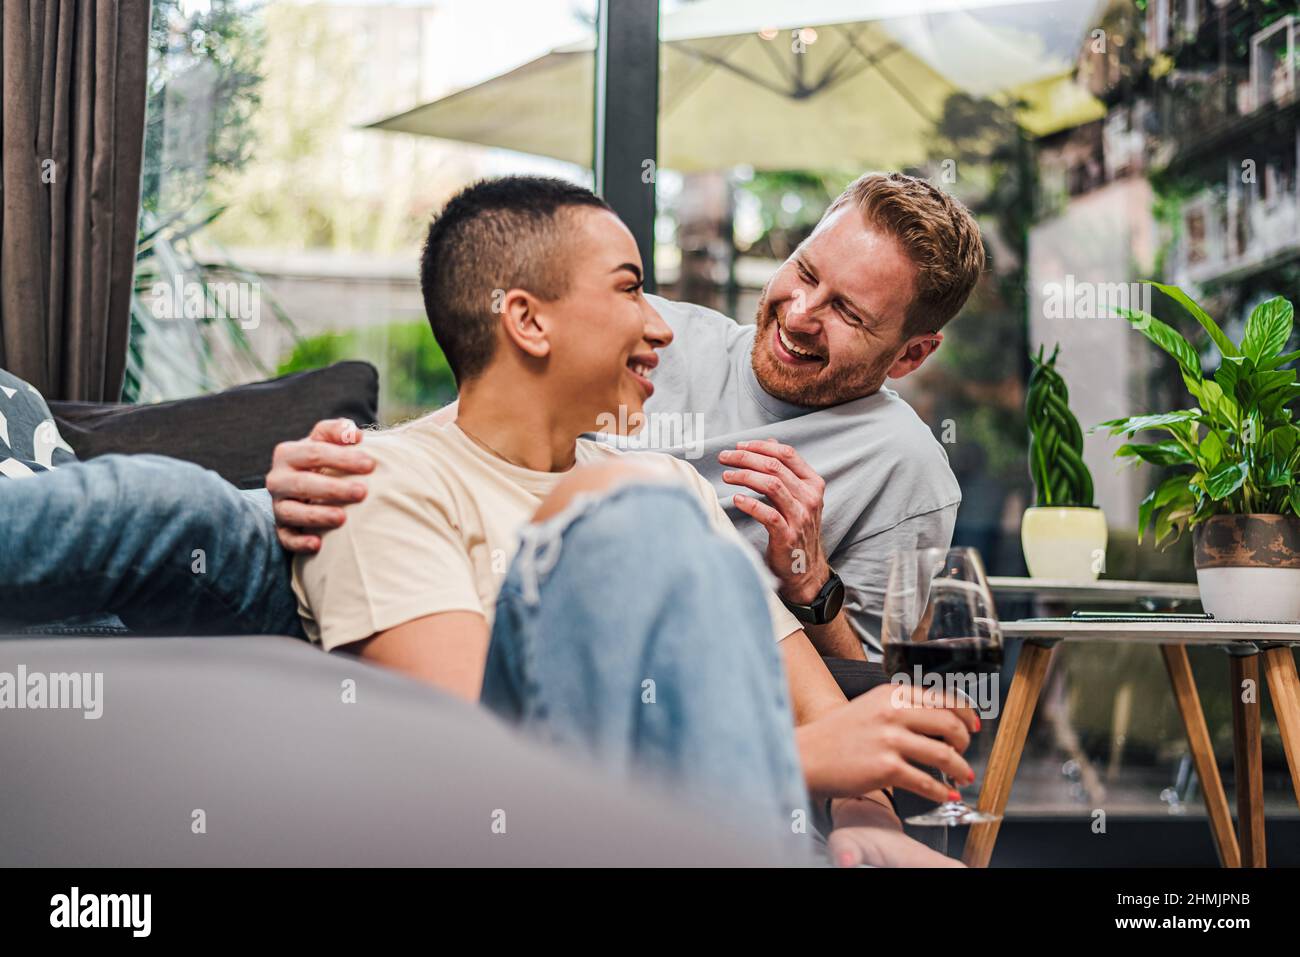 Junge Erwachsene Personen Paar genießen sich und haben eine tolle Zeit zu Hause zwanglose Atmosphäre trinken Wein lächelnd Lachen glücklich Gefühle Freude entspannen Stockfoto